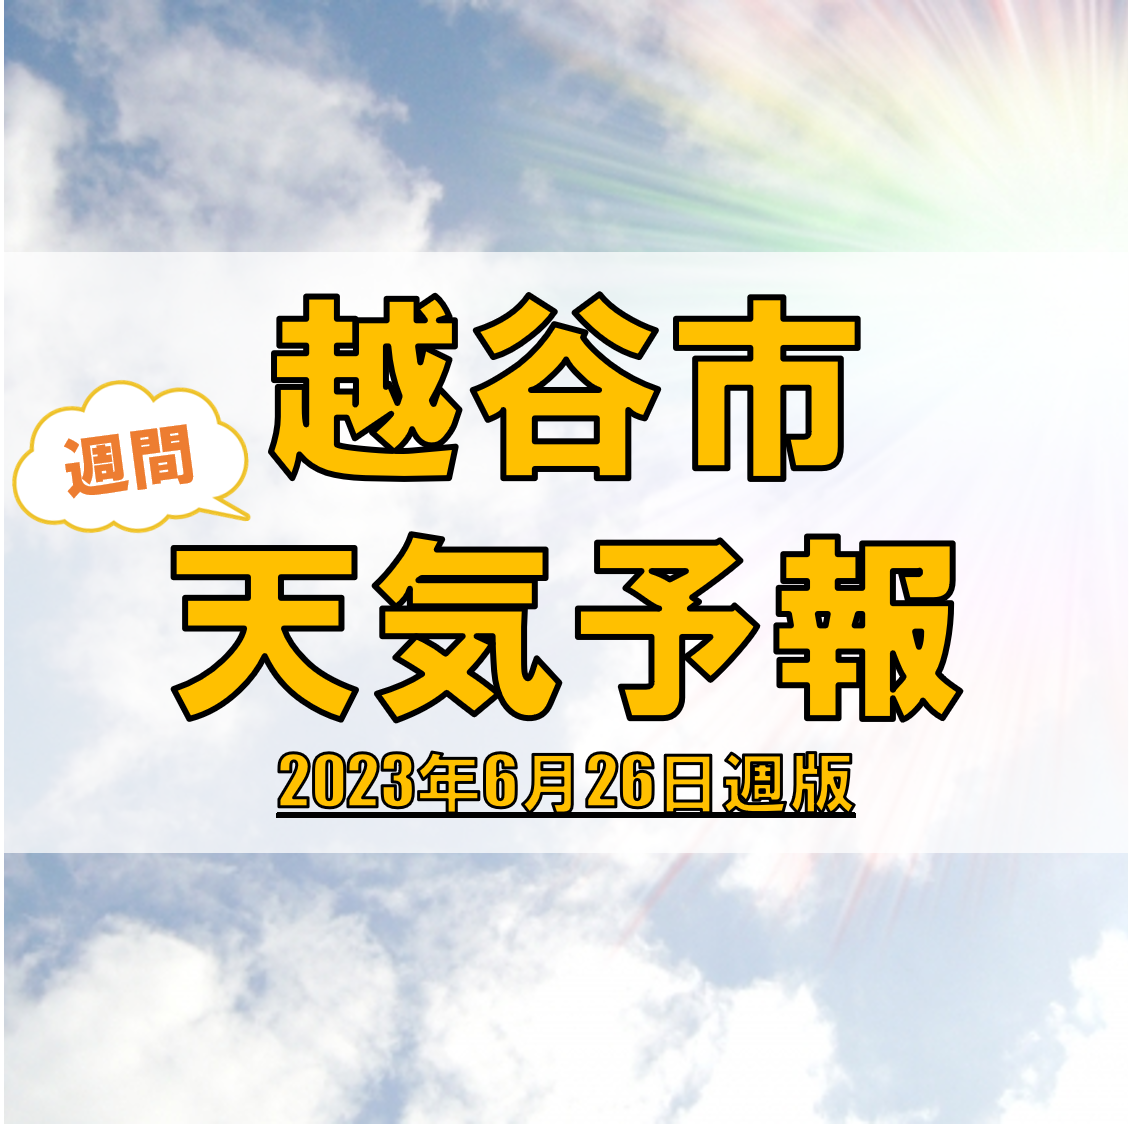 越谷市の天気 週間予報【2023年6月26日週】